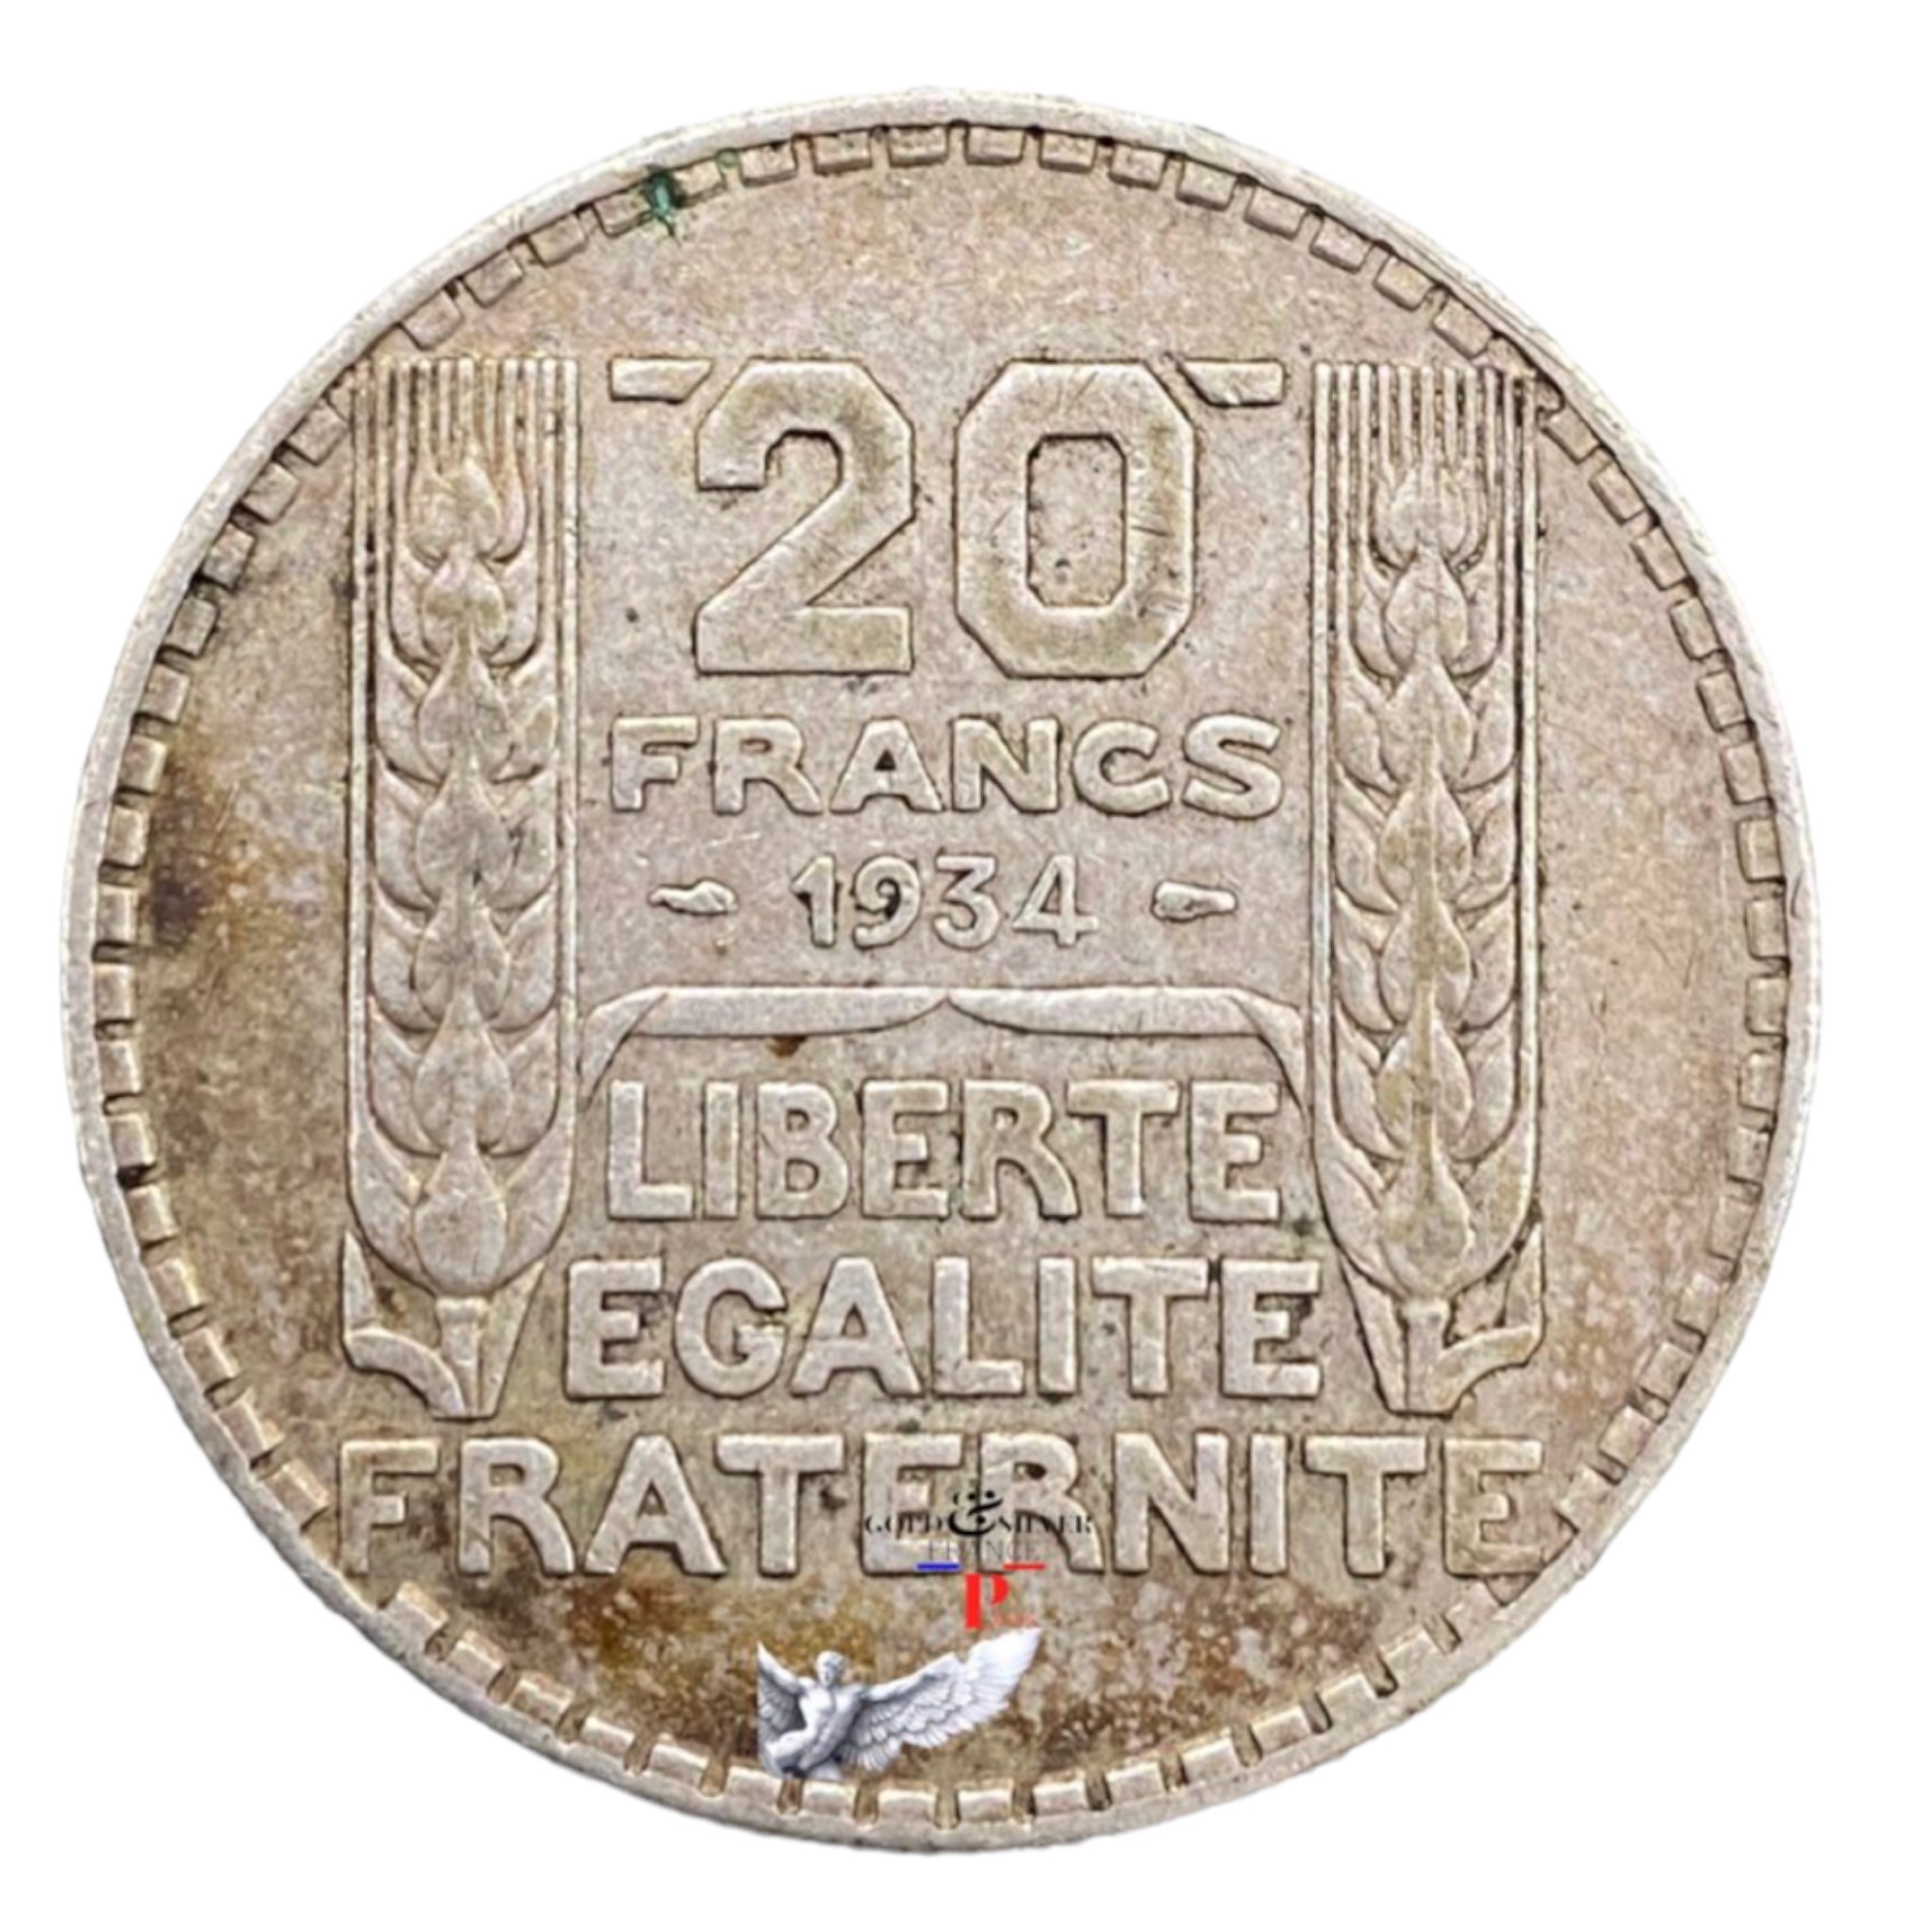 https://goldsilverfranceparis.com/shop/20-francs-turin-1934-paris-numismatiquebijouterie-a-nimes-achat-or-et-argent-fr/